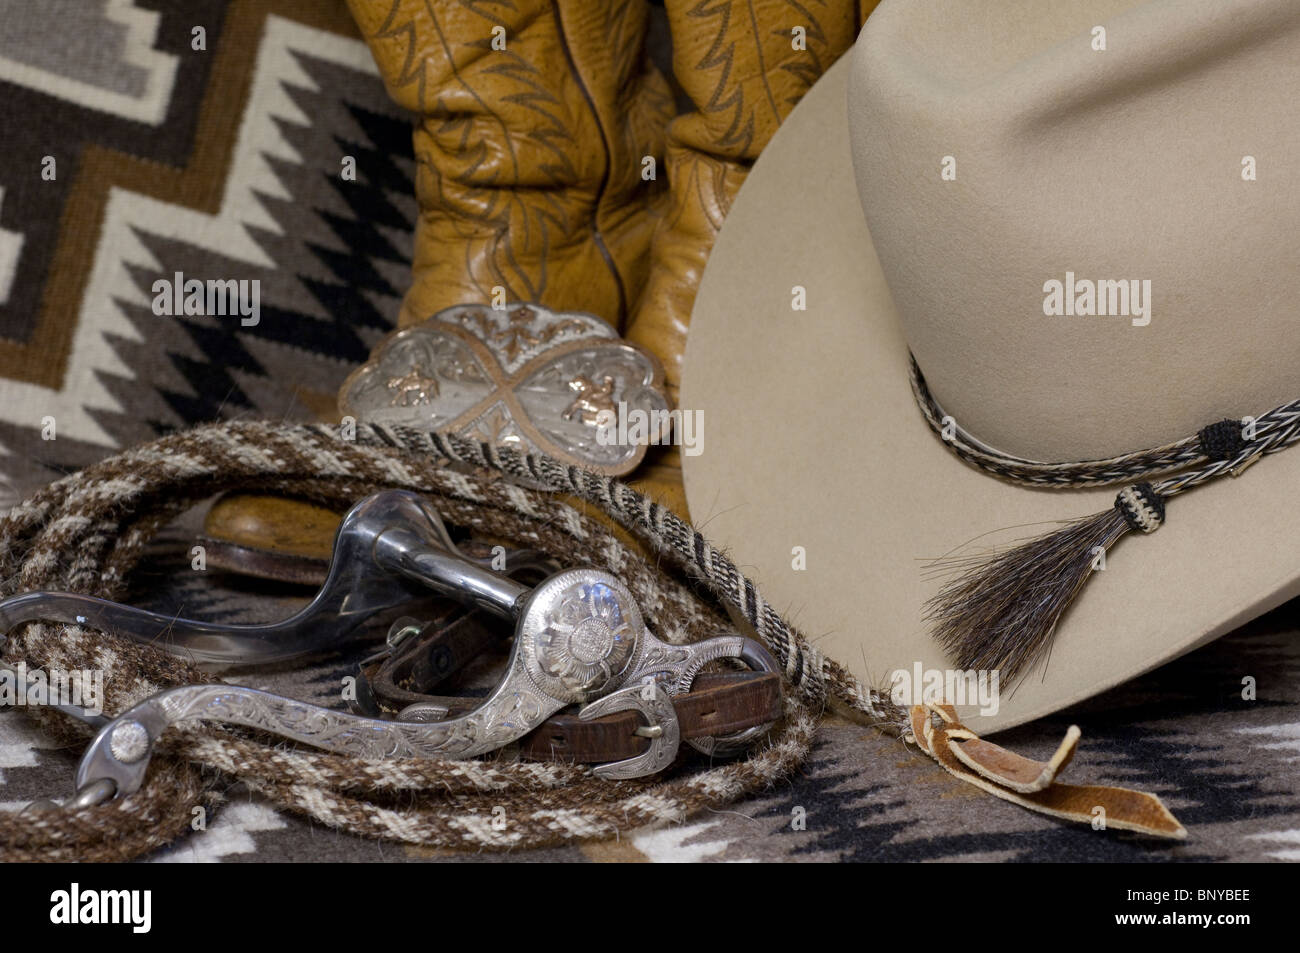 Western feltro il cappello da cowboy con crine intrecciato hatband. Argento  mostrano contenere bit e argento e oro la fibbia della cinghia. PR Foto  stock - Alamy